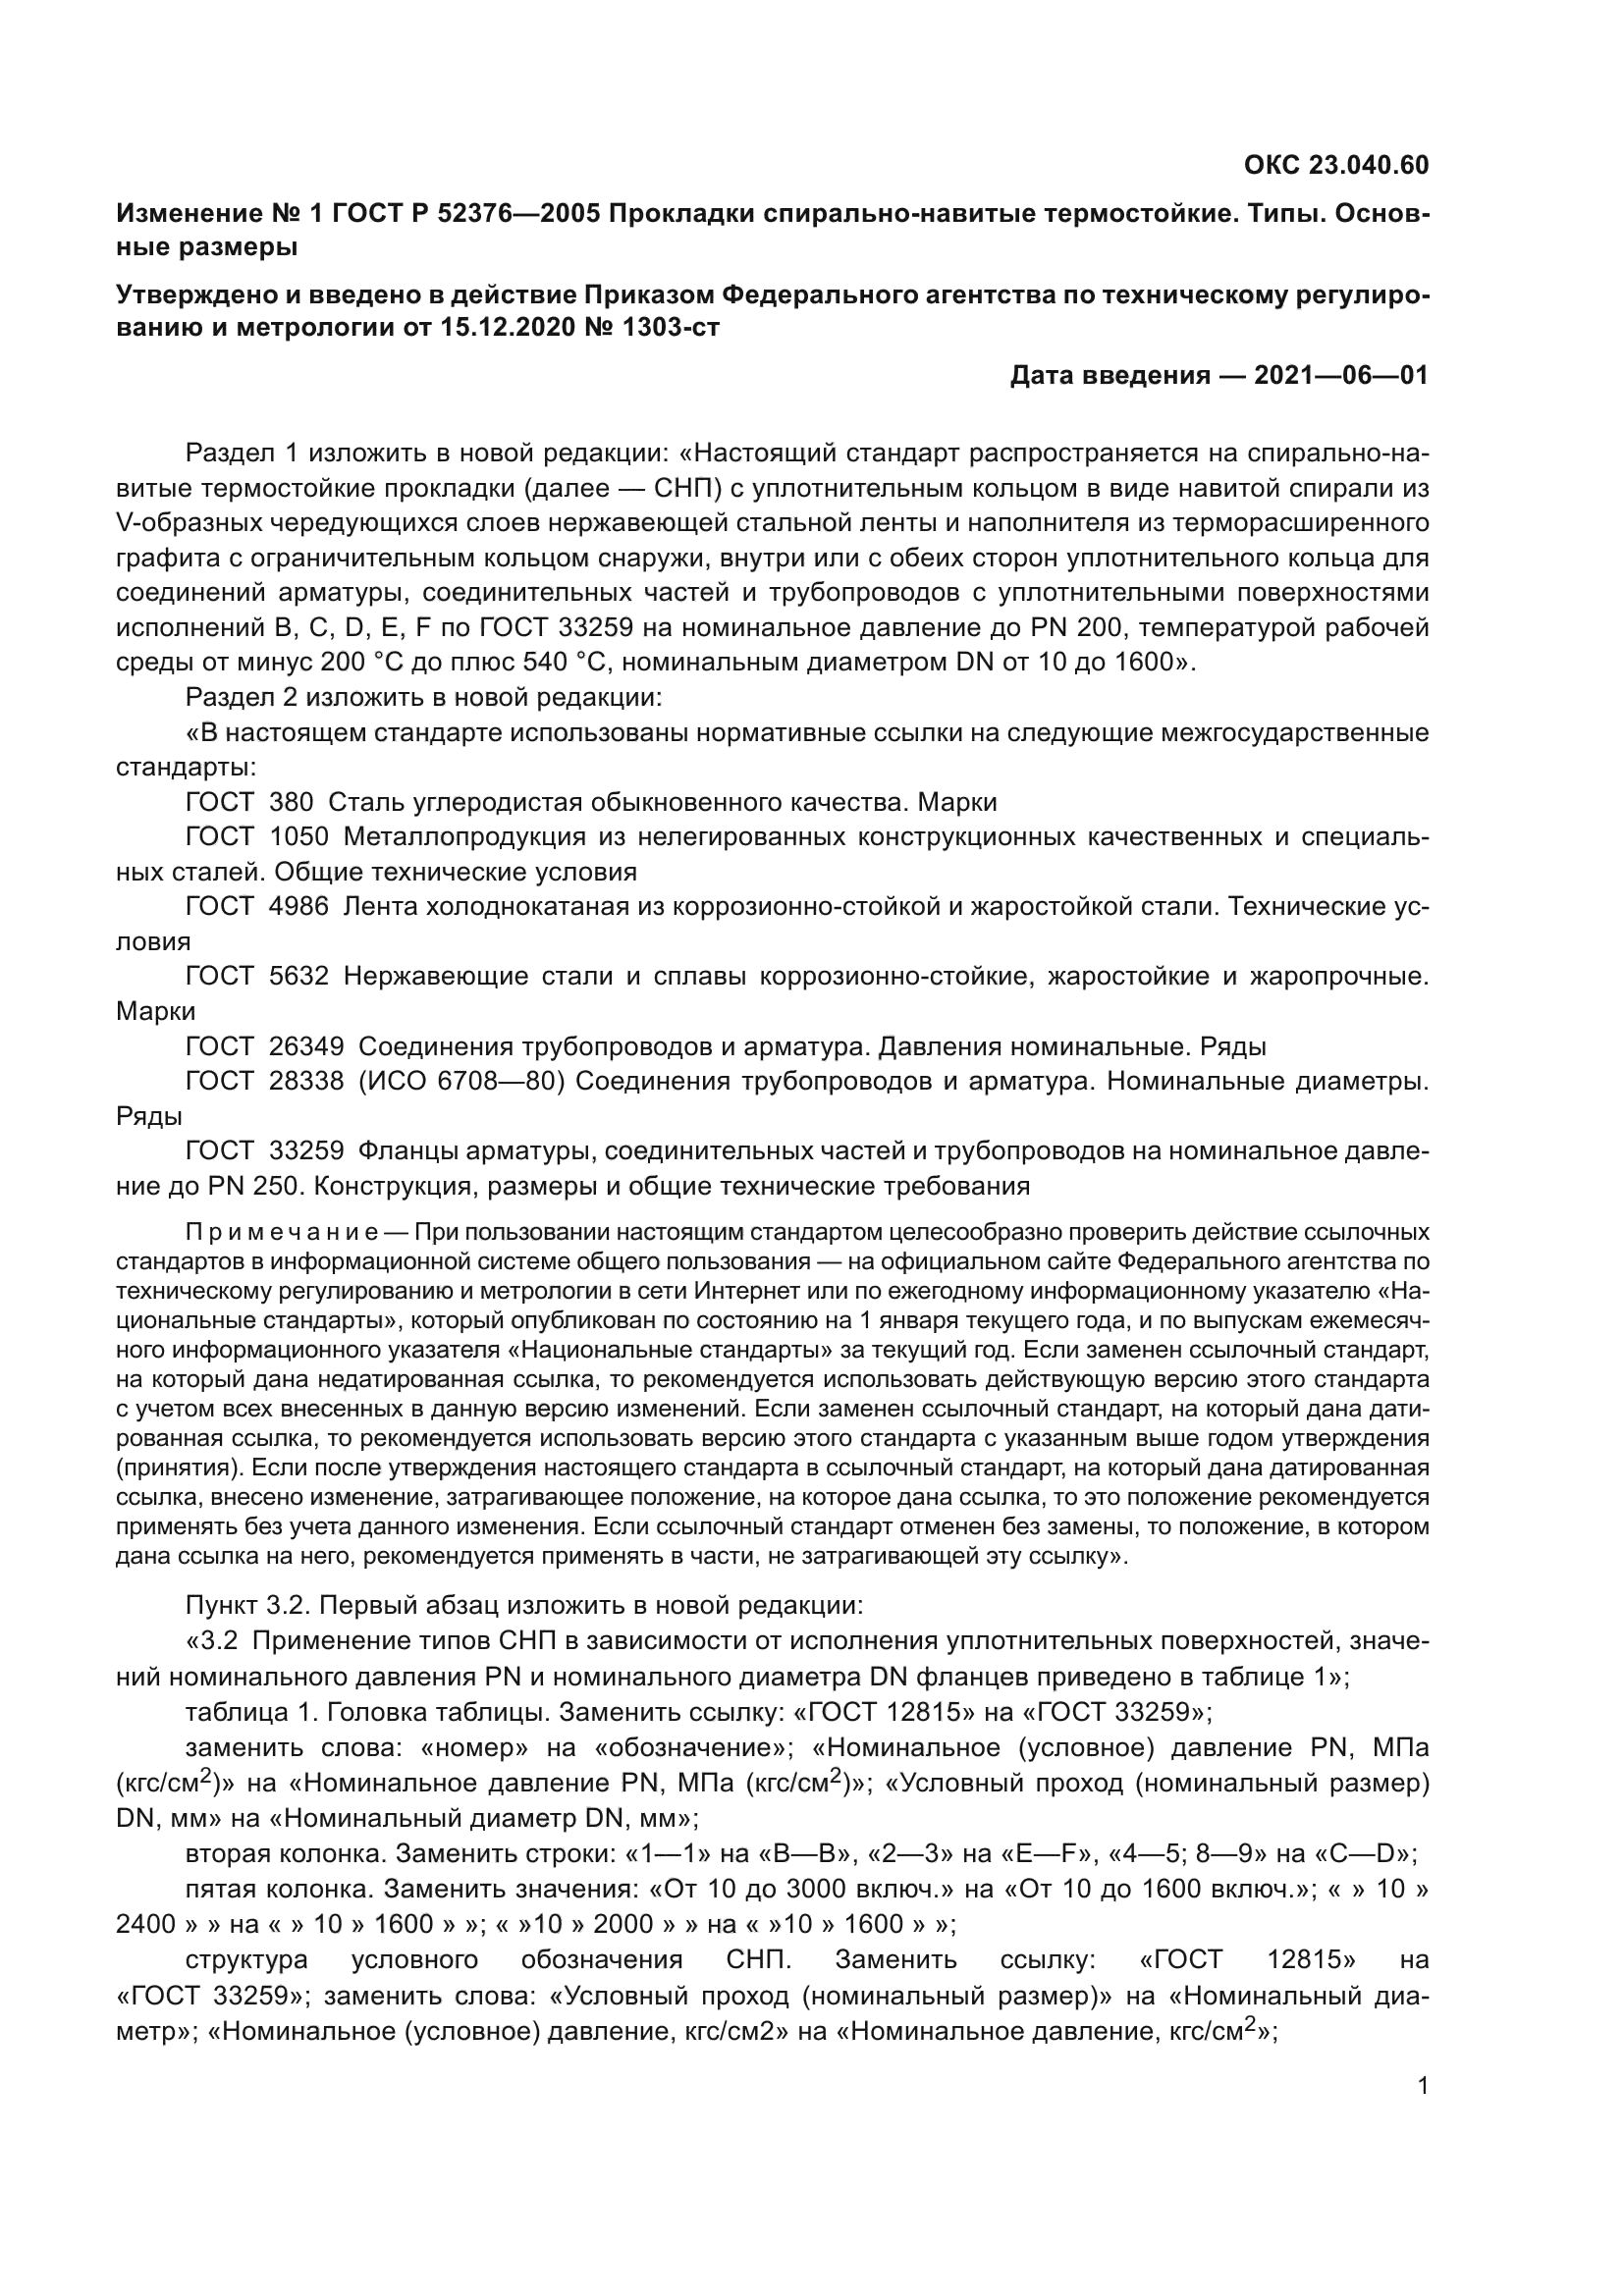 Изменение №1 к ГОСТ Р 52376-2005